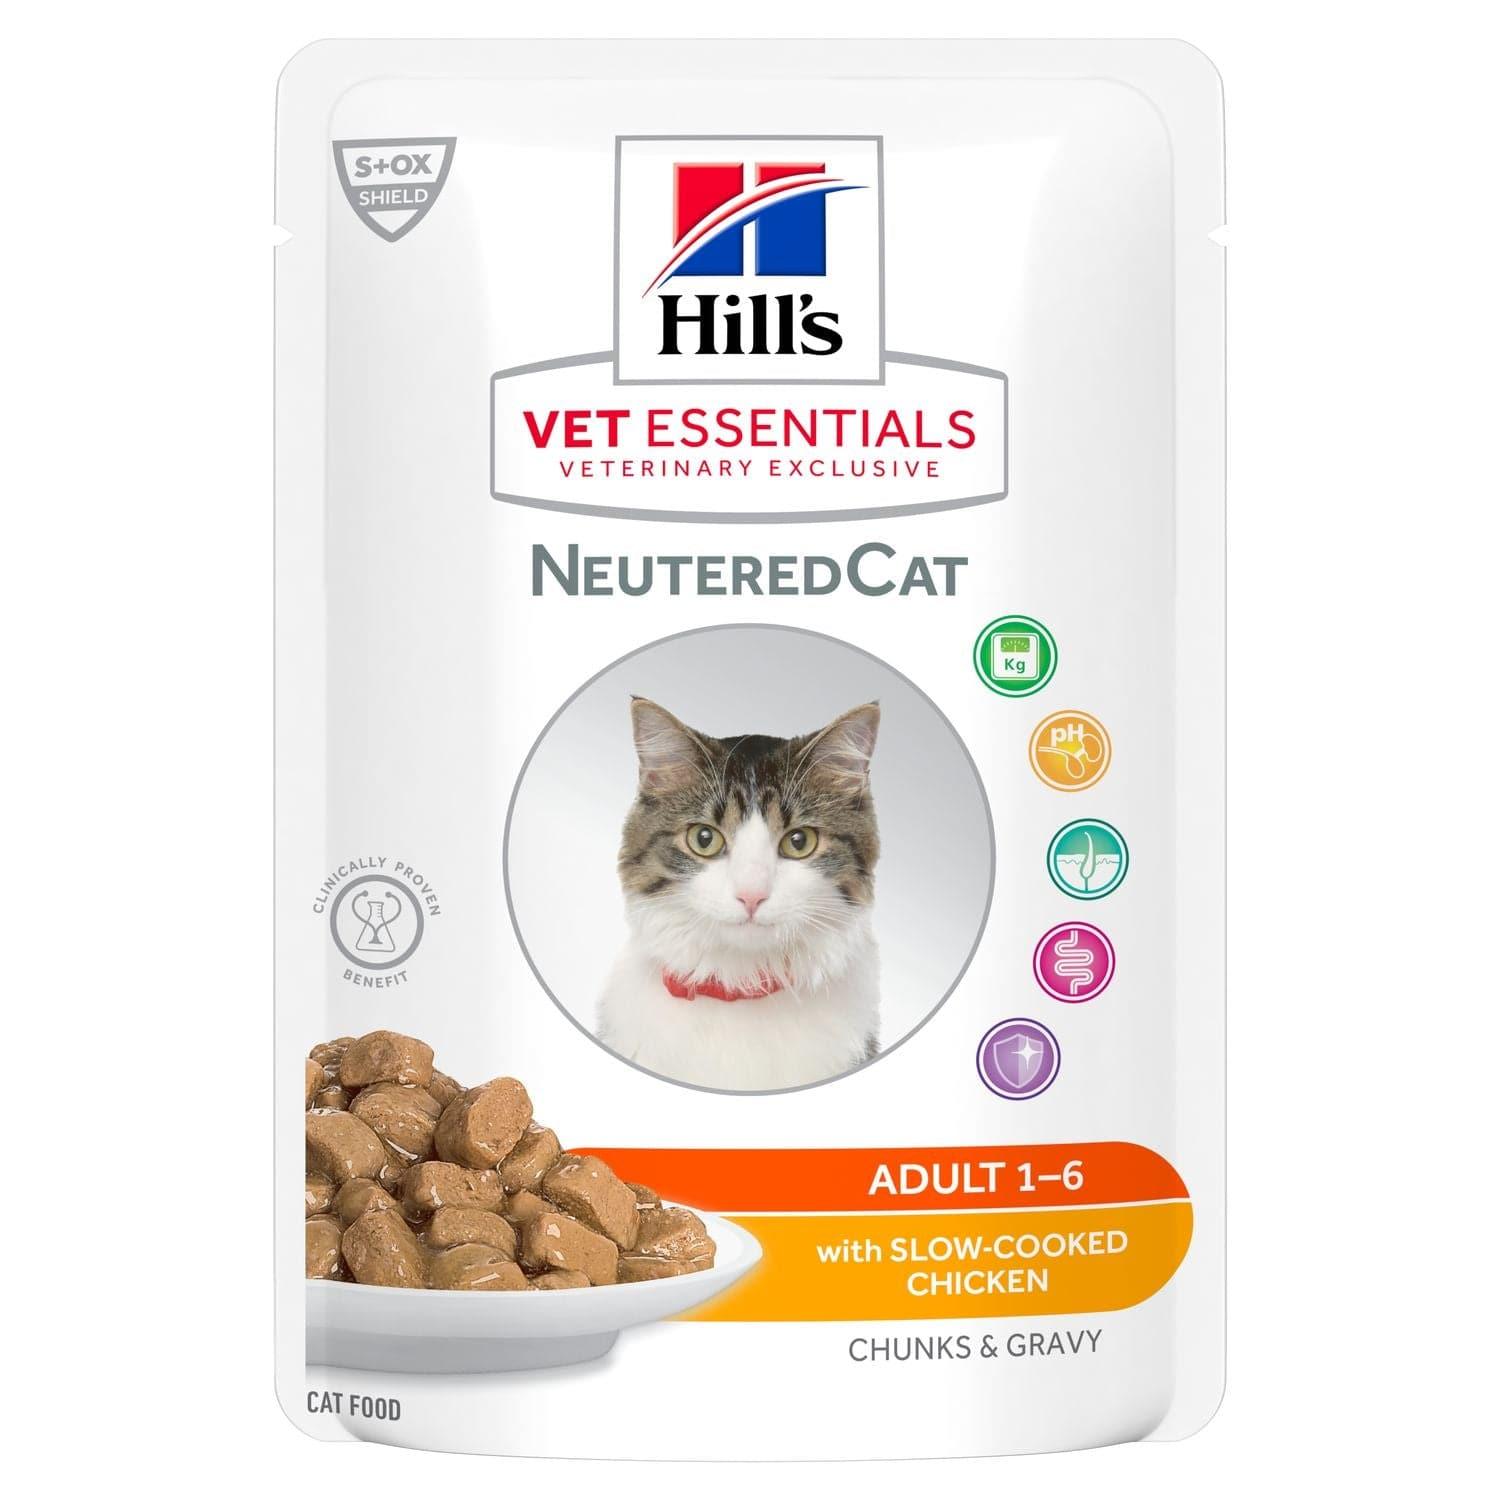 NeuteredCat Adult Nassnahrung - Hill's VetEssentials - Alter:Adult, Futterart:Nass, Geschmack:Huhn, Kastriert:ja, Tierart:Katze - Marigin AG Onlineshop für Tierbedarf